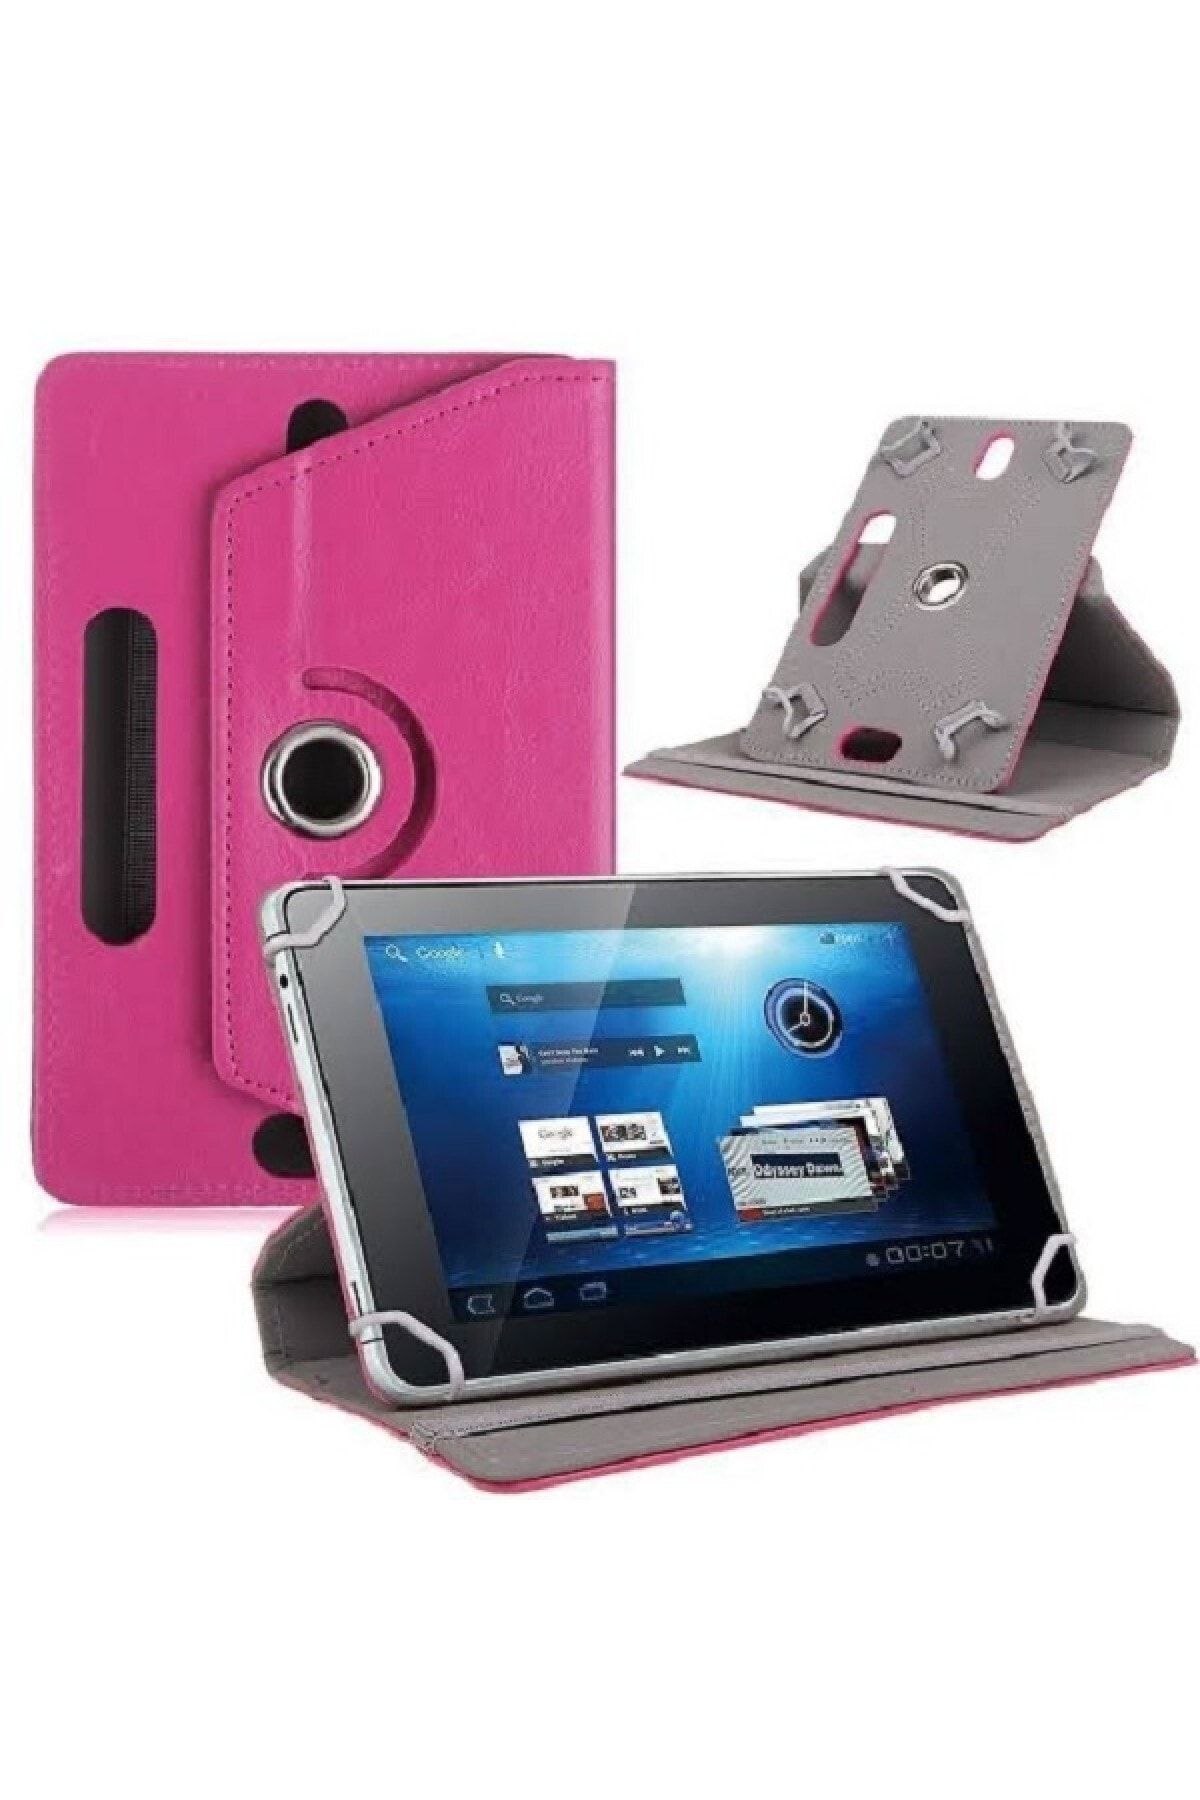 delux case Lenovo Smart Tab M8 Tb-850fs Za5c0062t 8 Inch Uyumlu Deri Tablet Kılıf Sıtandlı 360° Dönebilen